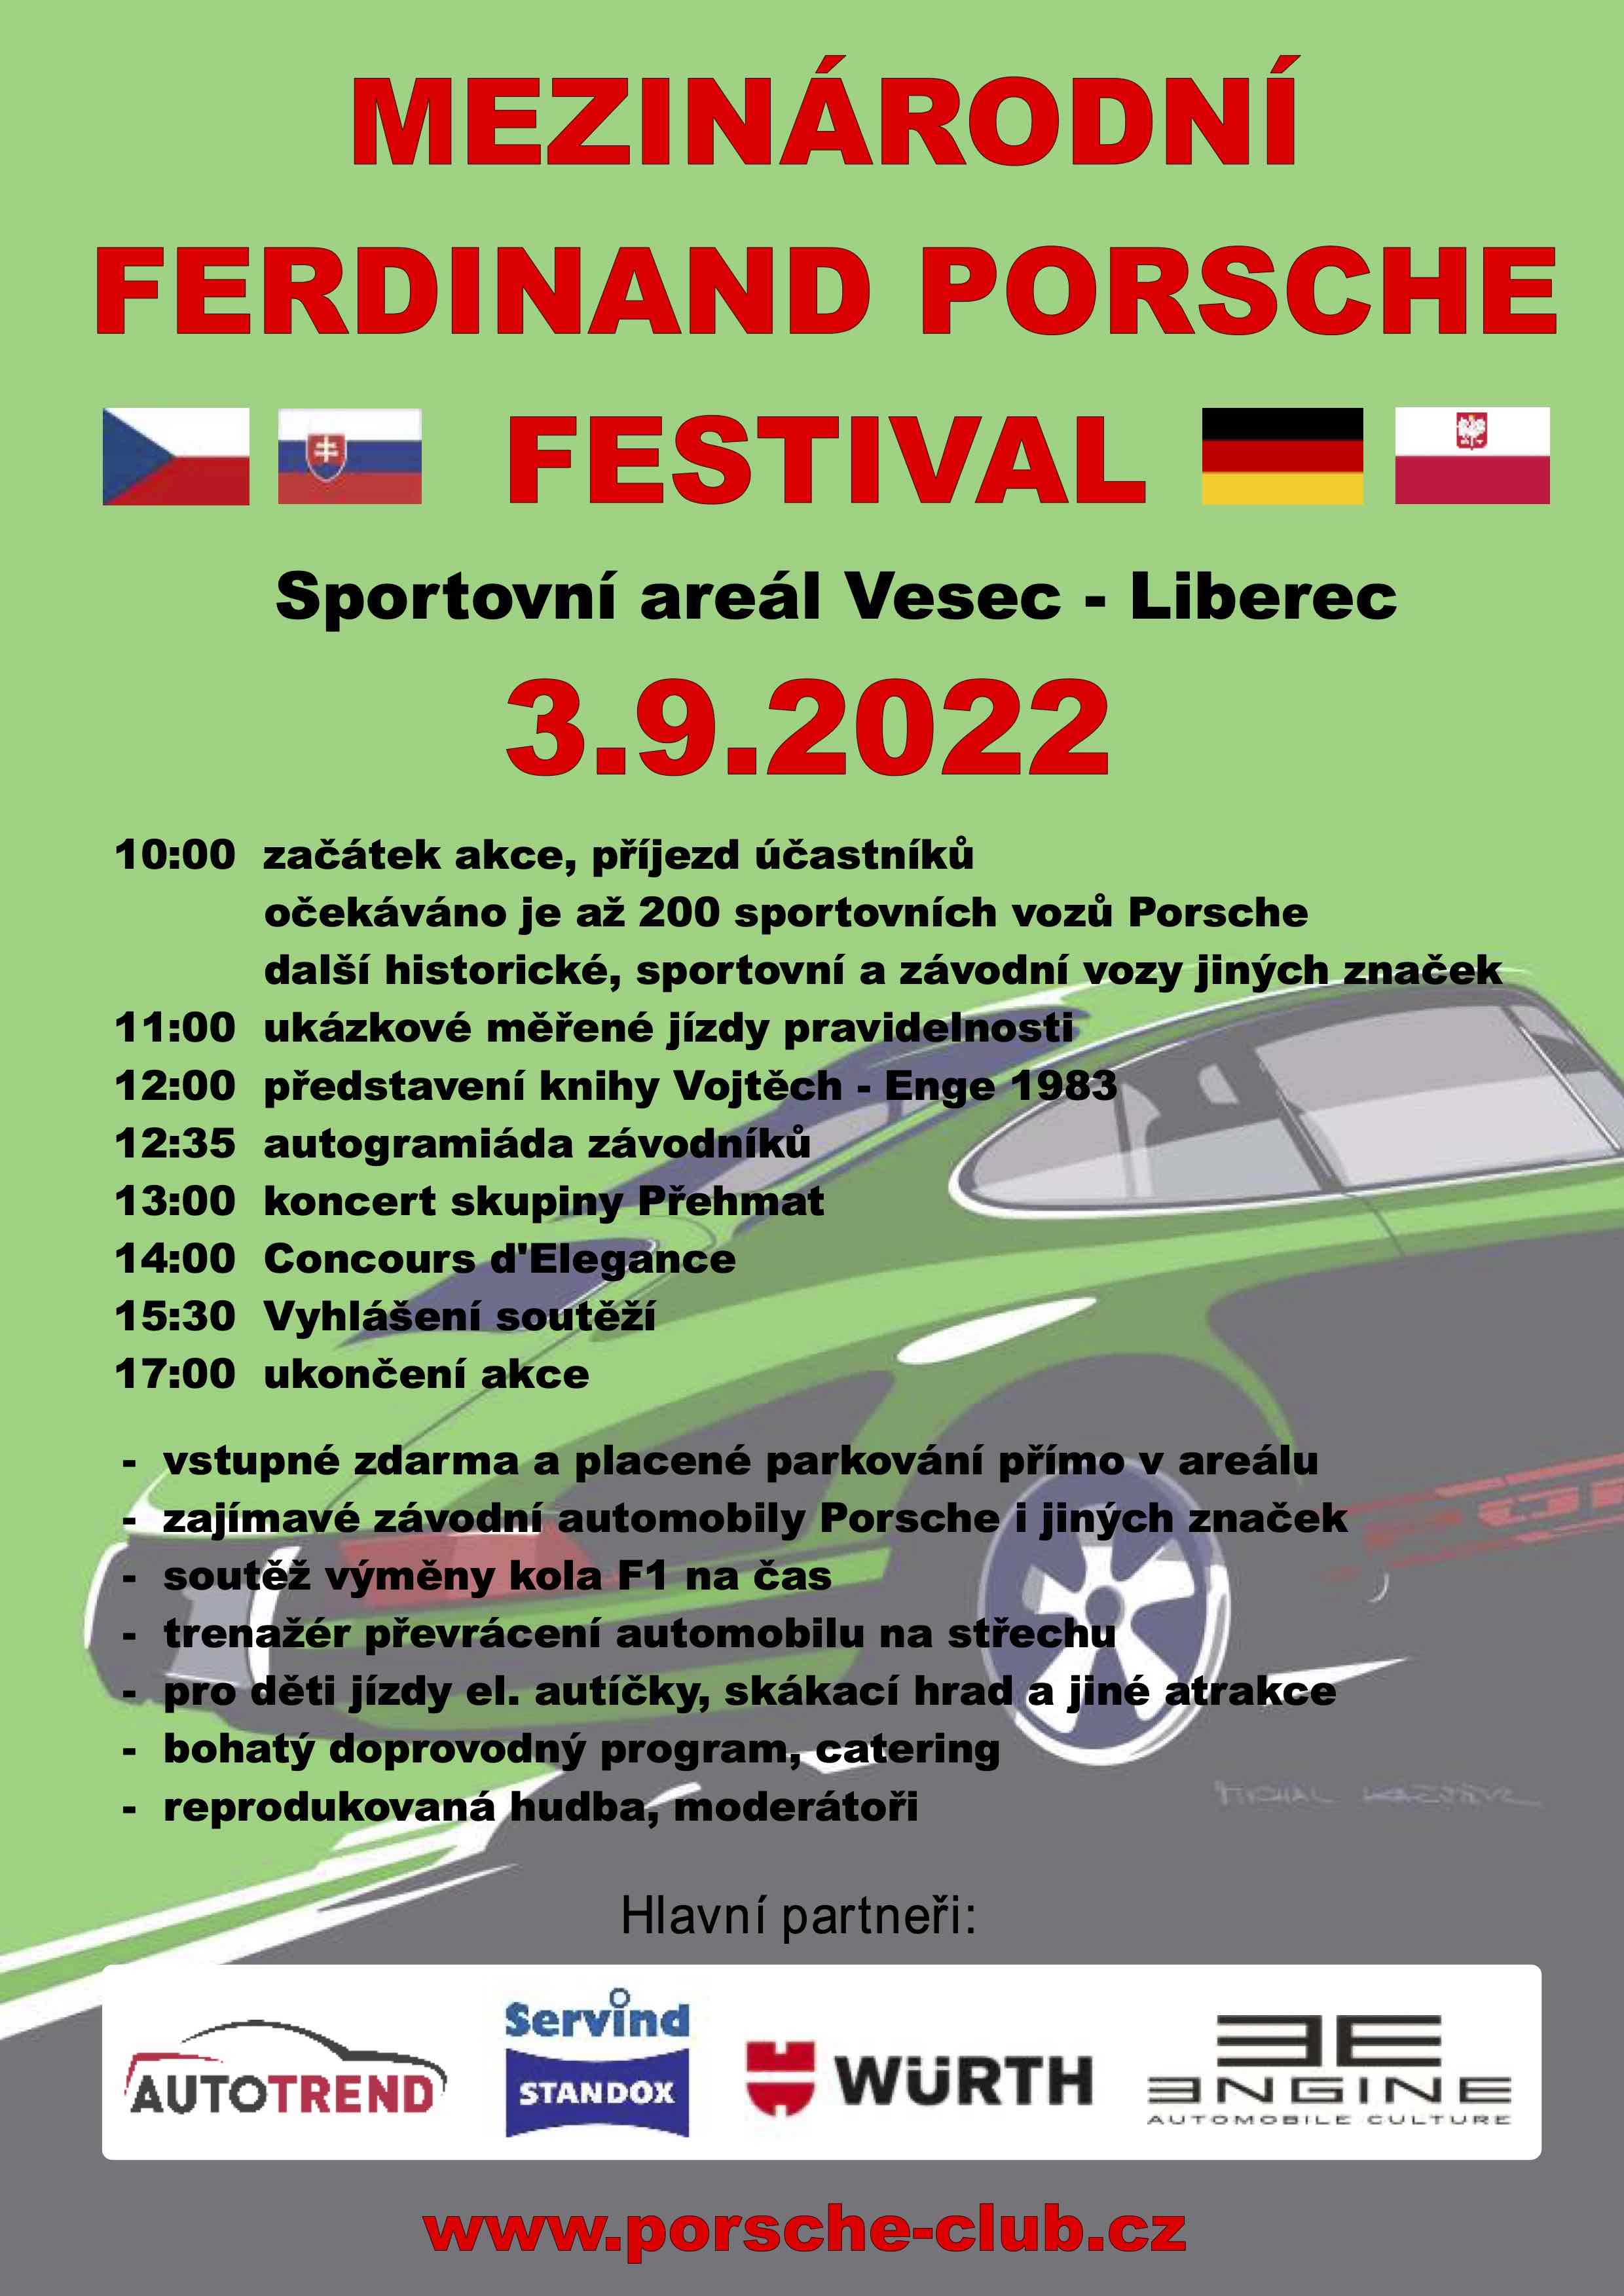 Další ročník Mezinárodního Porsche festivalu